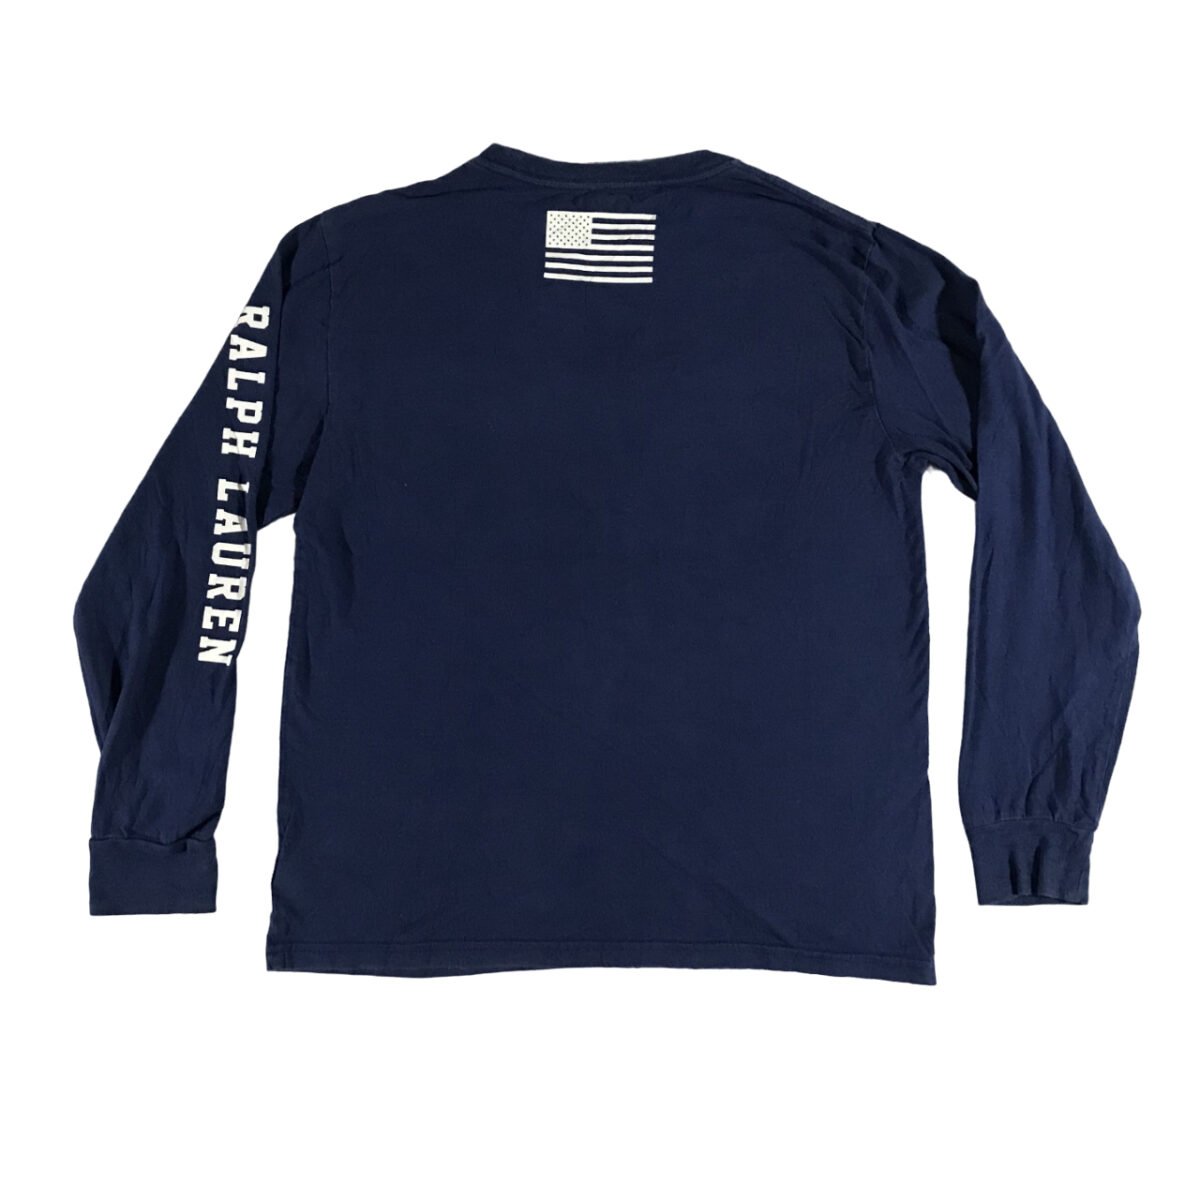 T-shirt longsleeve Polo Ralph Lauren USA blue